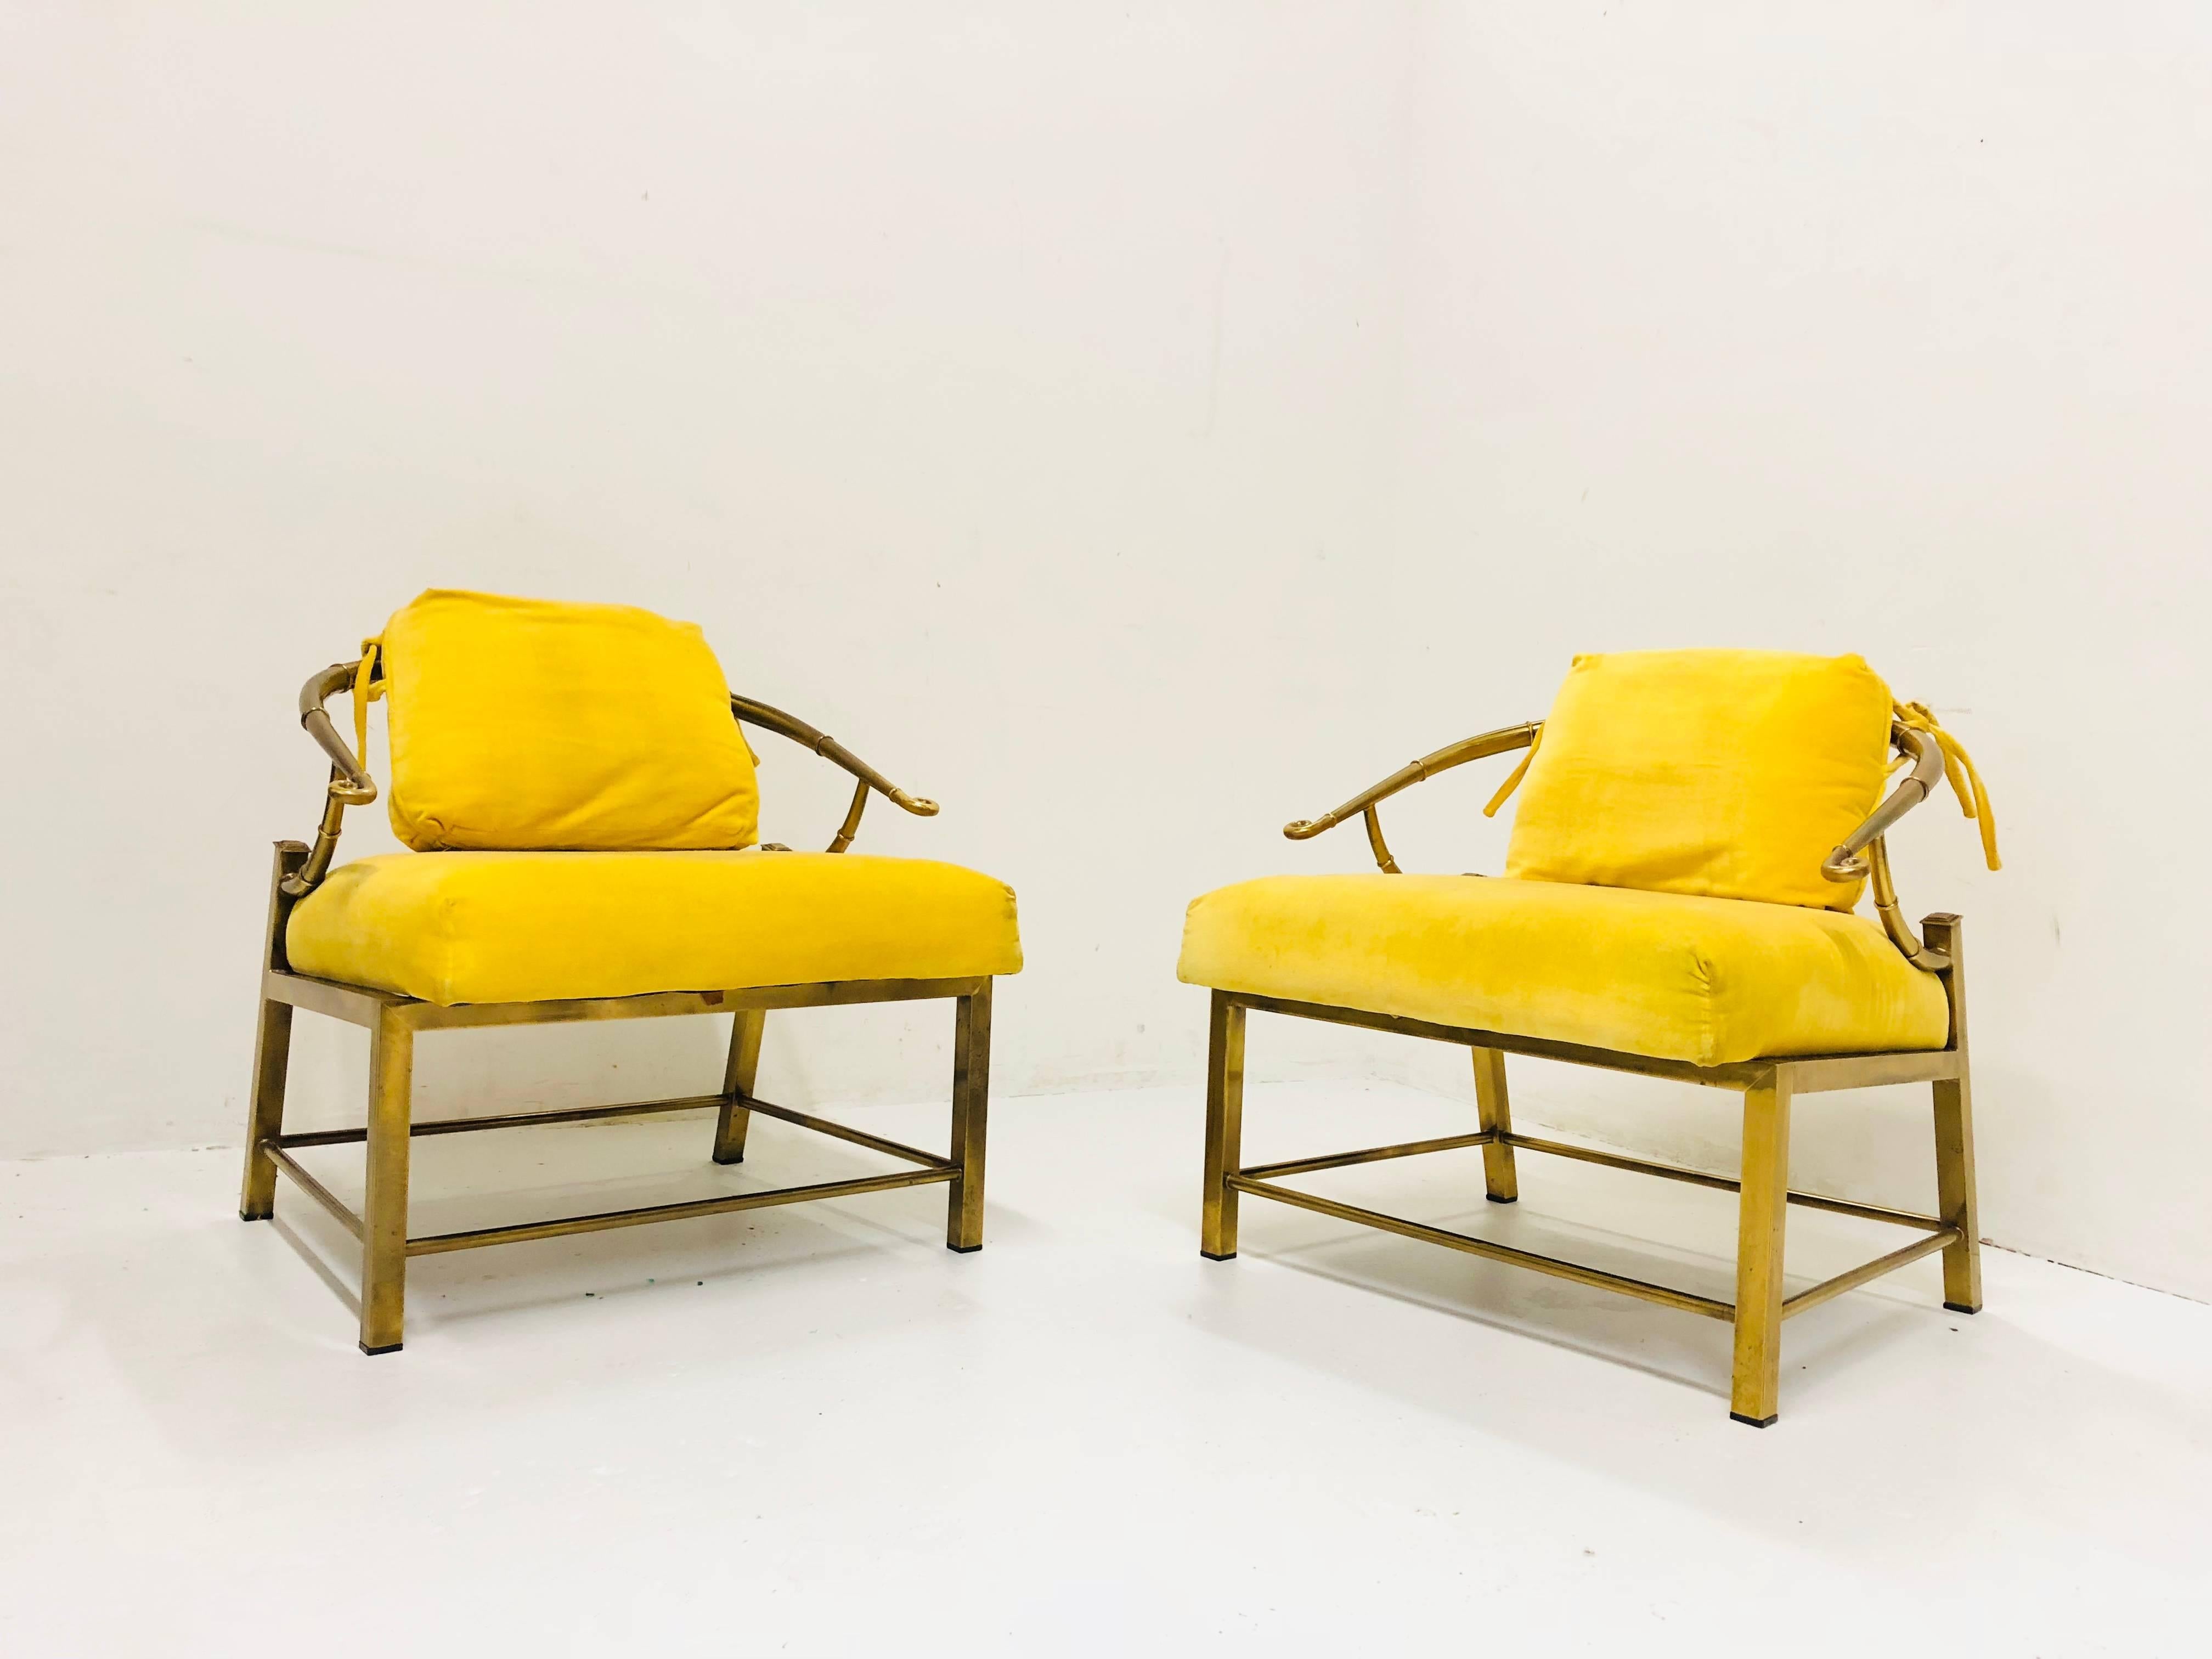 Paire de chaises longues Ming en laiton avec velours jaune. Une nouvelle tapisserie et une remise en état sont recommandées, vers les années 1960.

Dimensions : 26